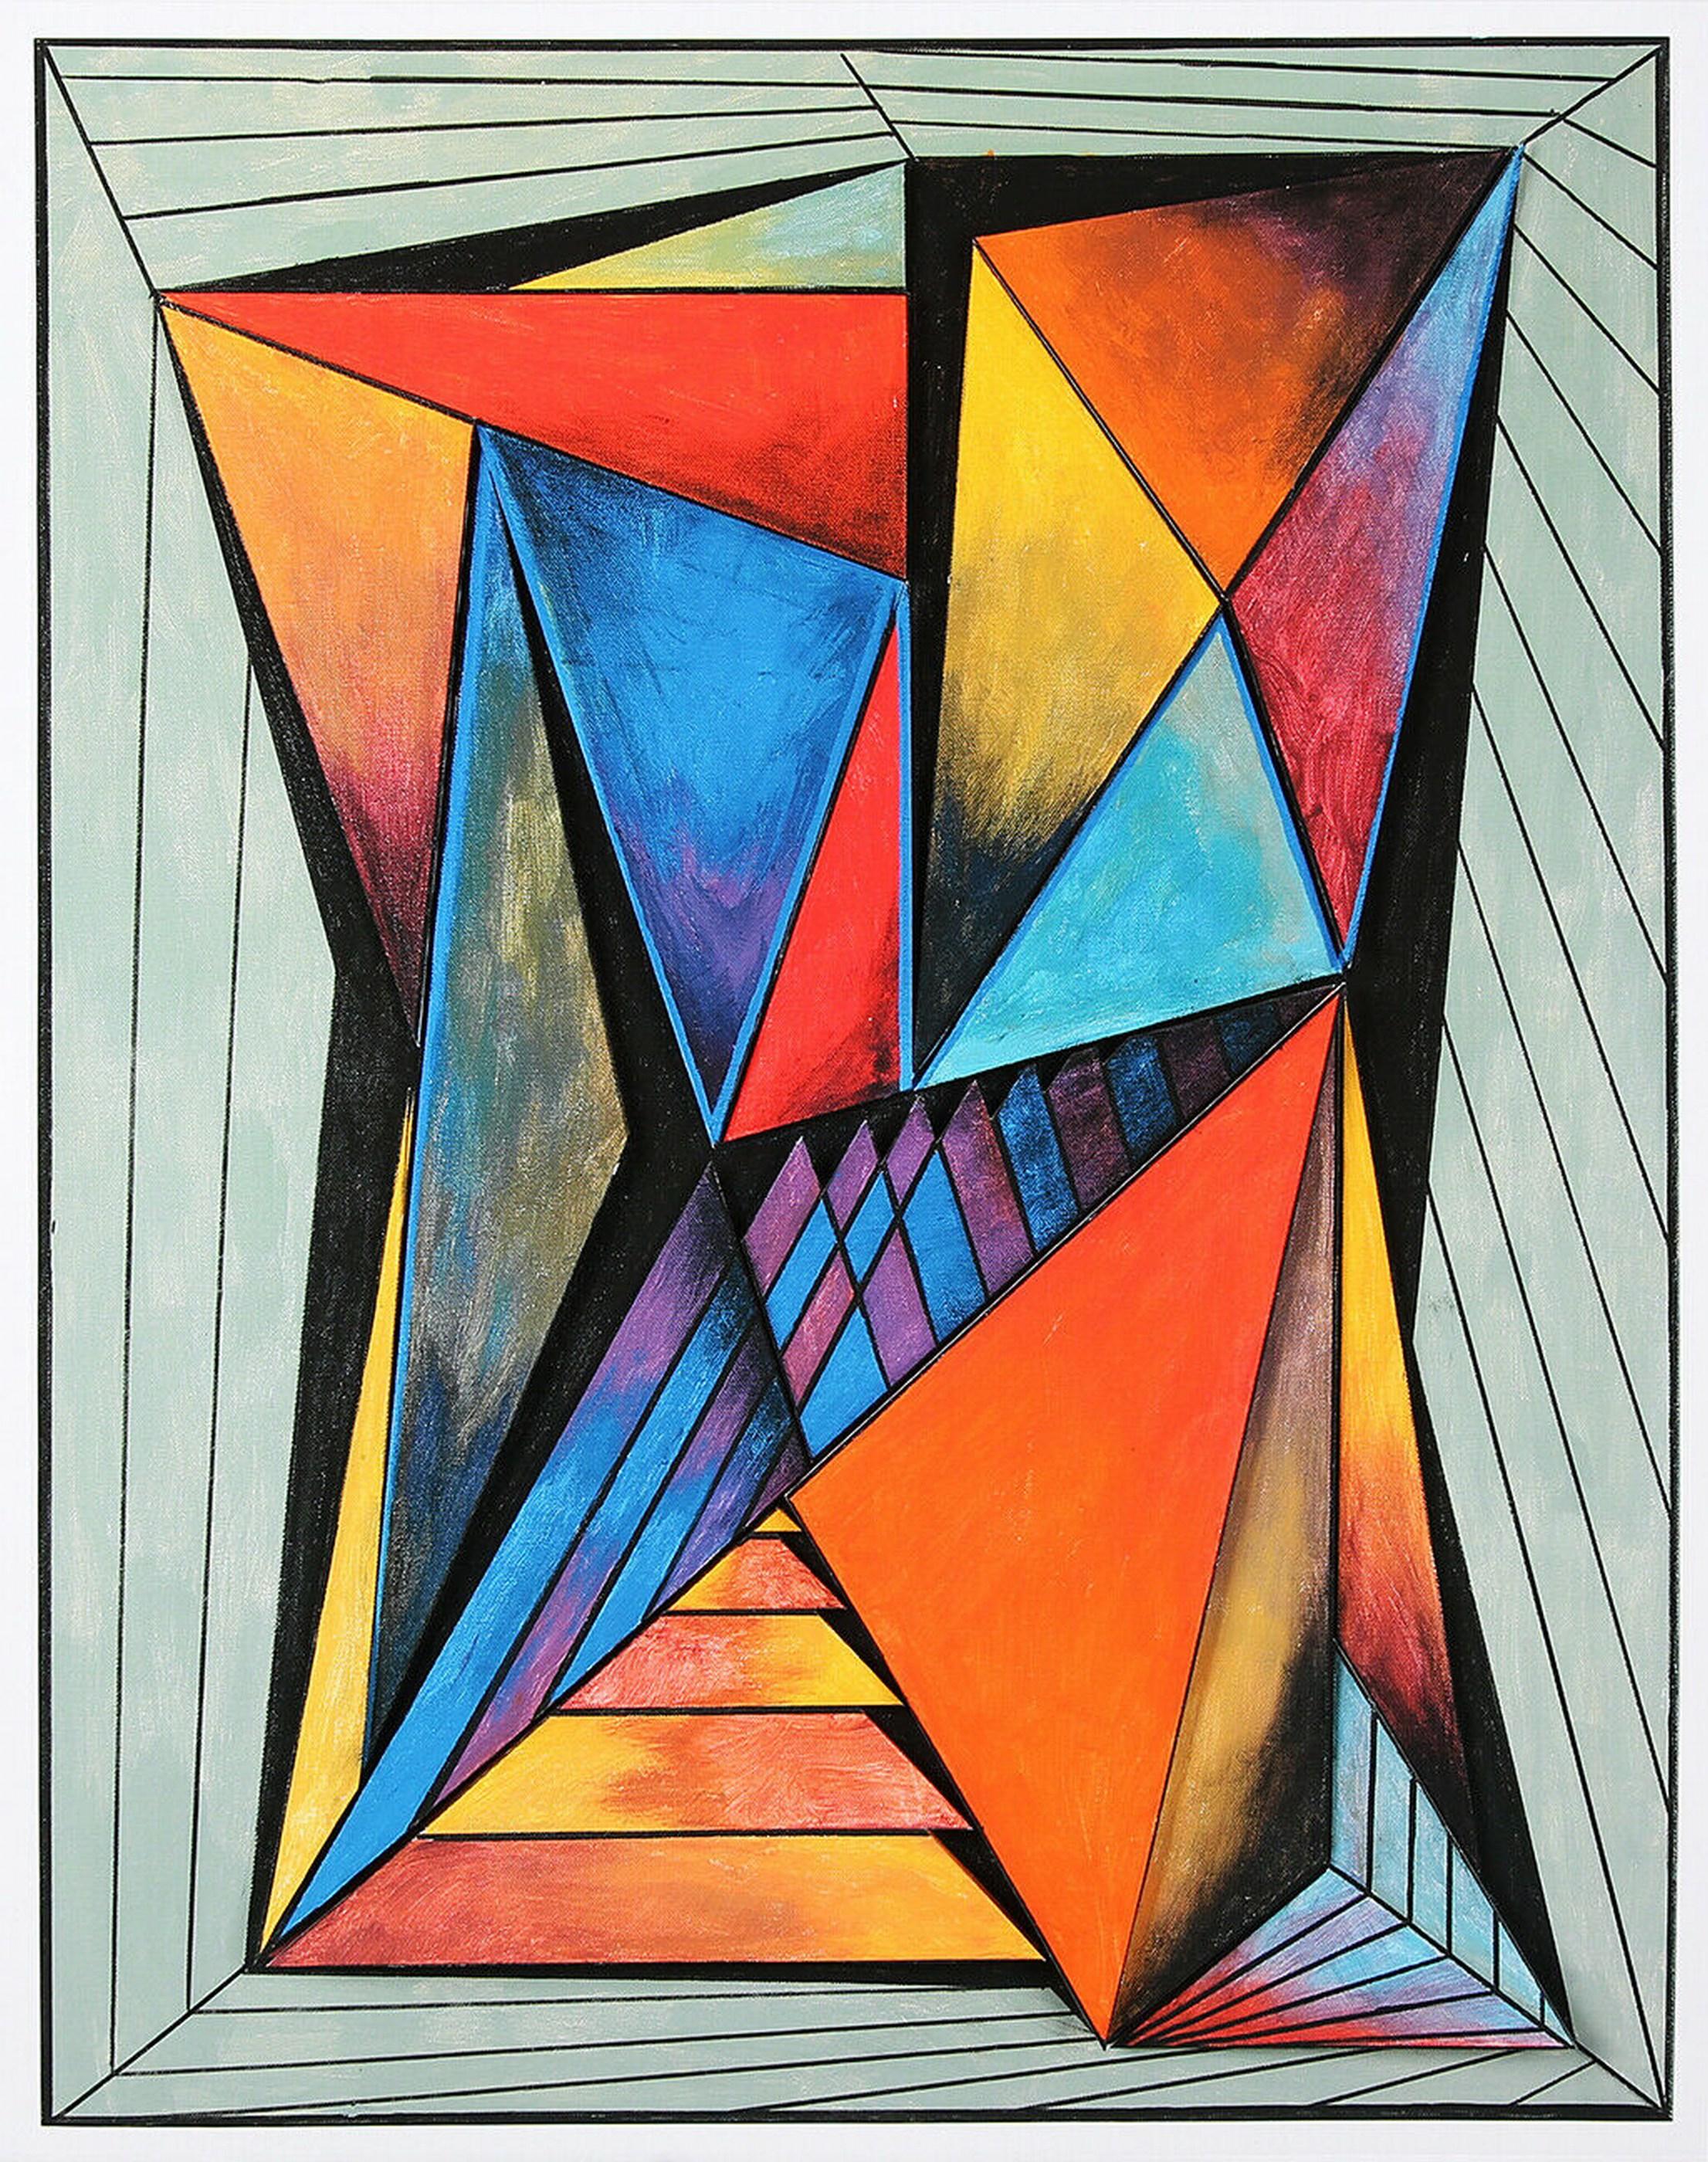 Geometrische Komposition #4 (3D-Konstruktion, Op Art, Lyonel Feininger) – Print von Eduard Diem 